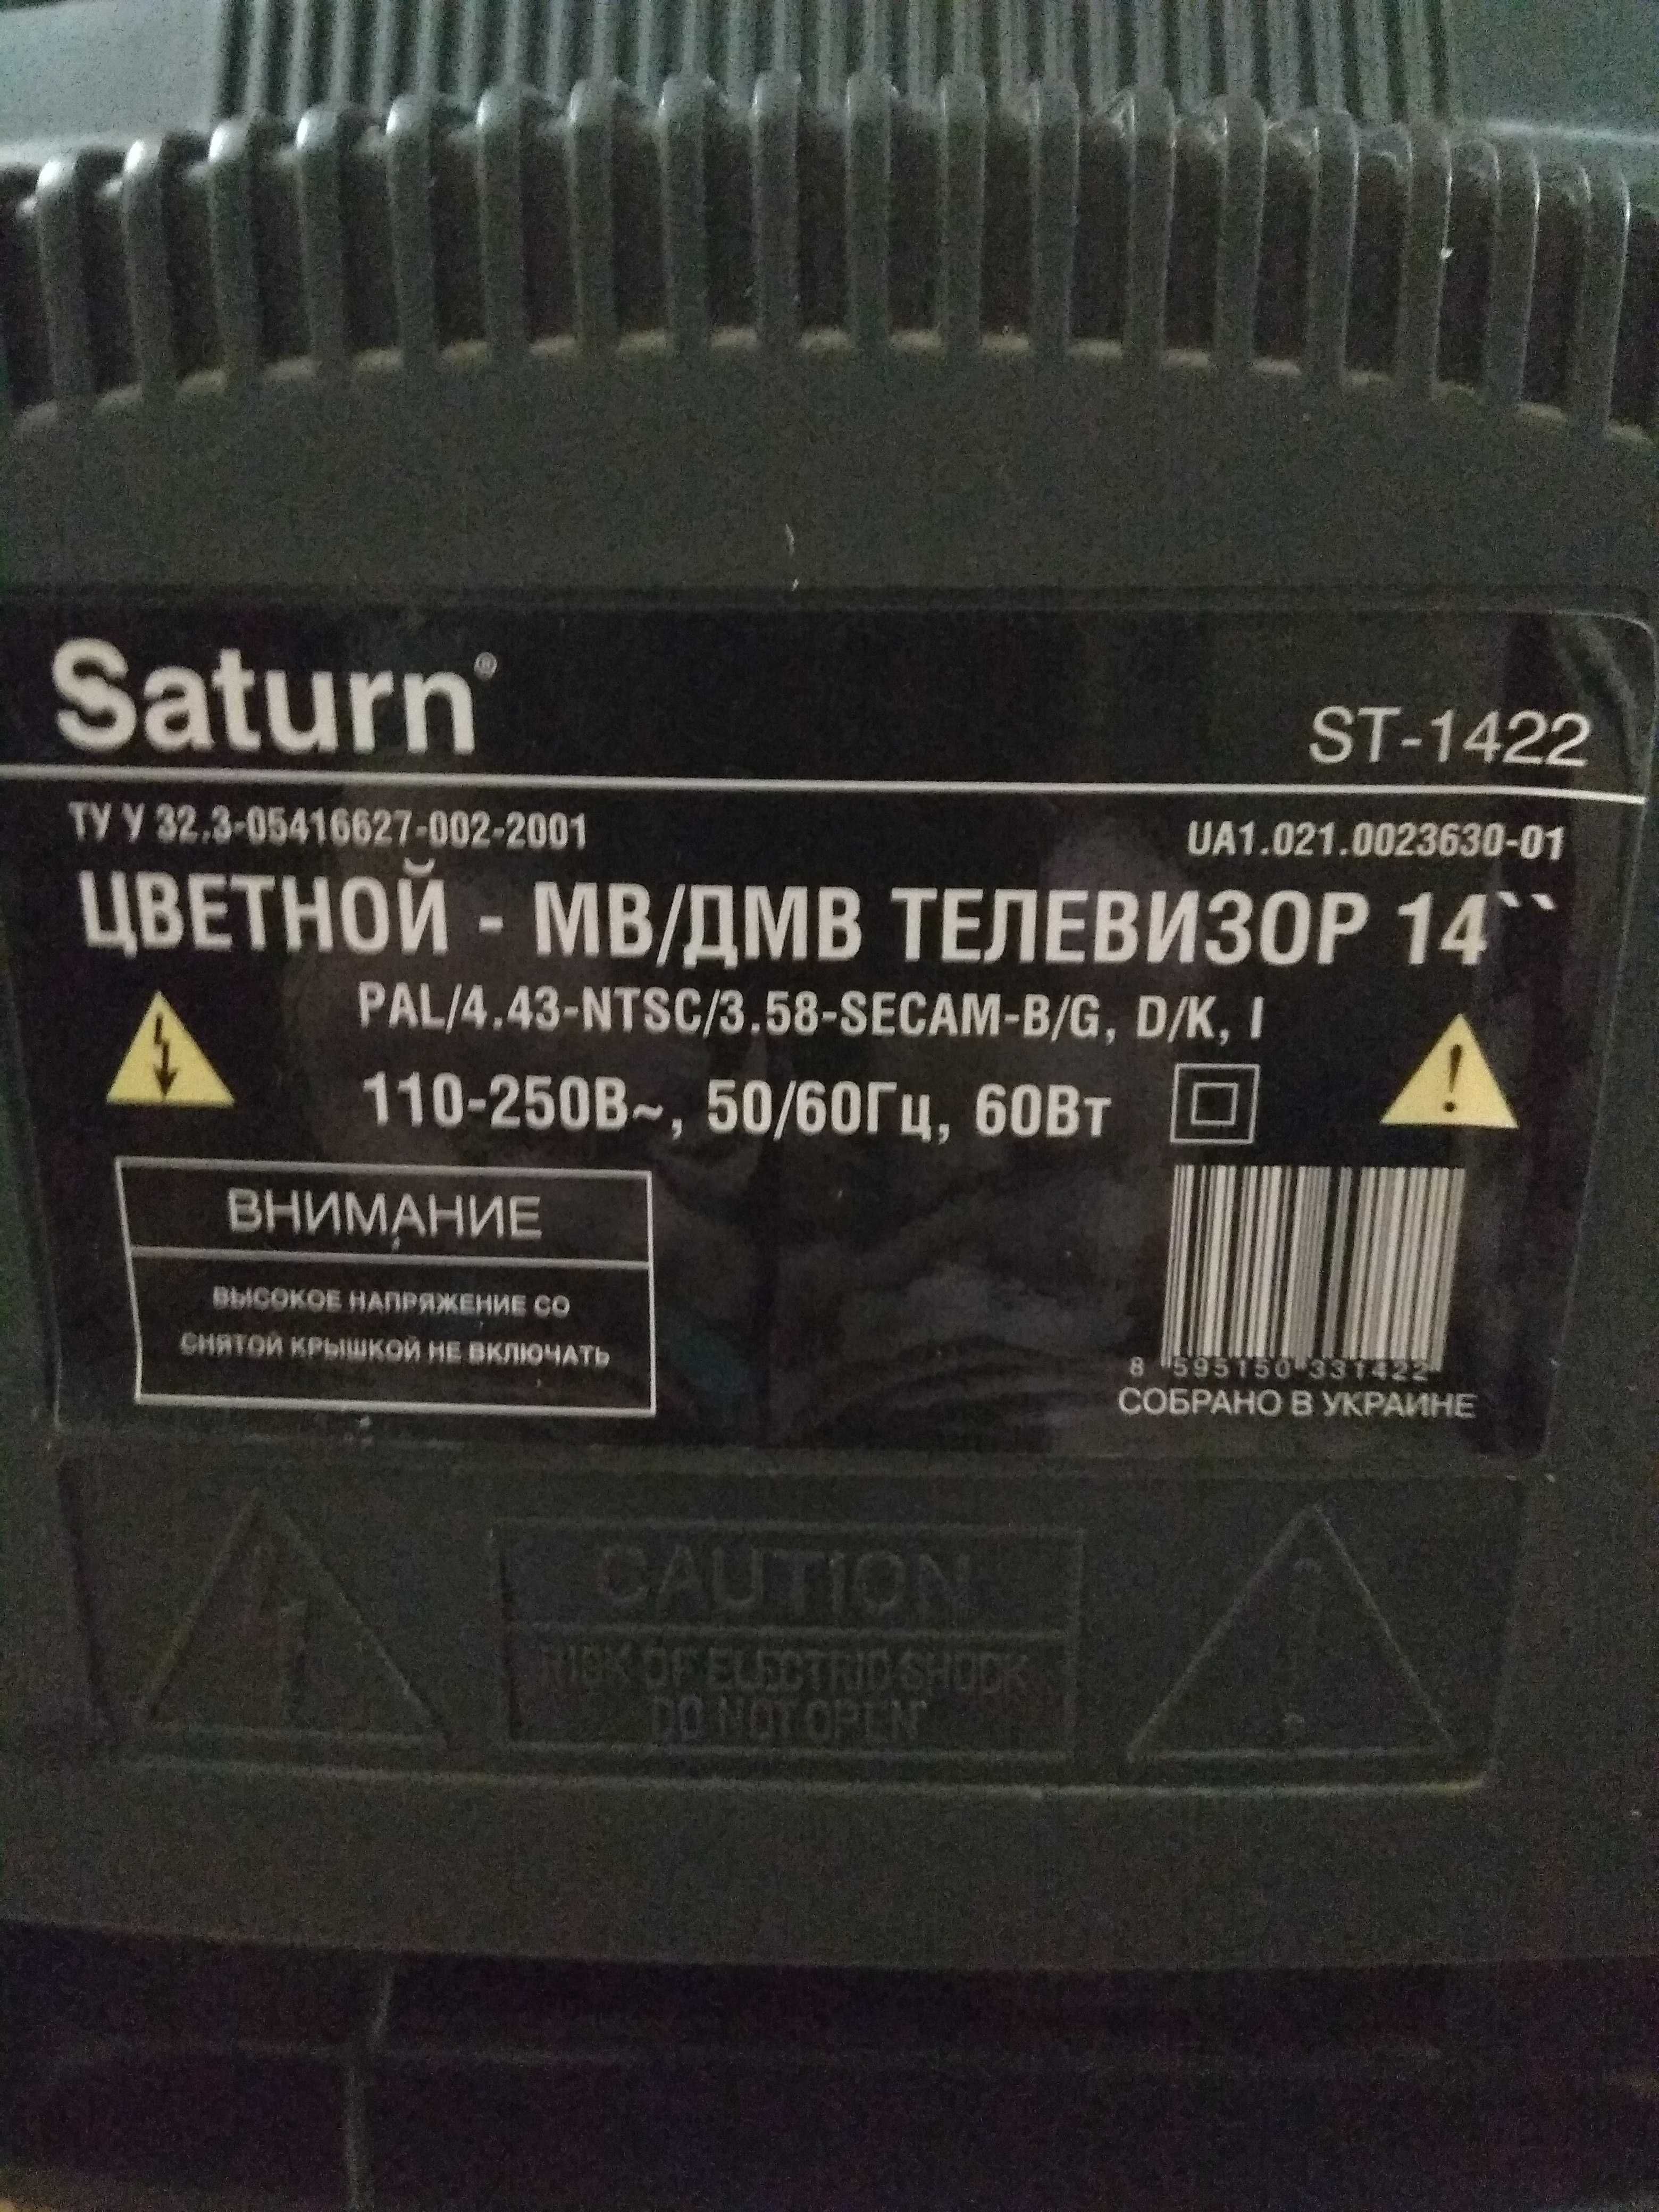 цветной телевизор Сатурн СТ-1422 Saturn ST-1422